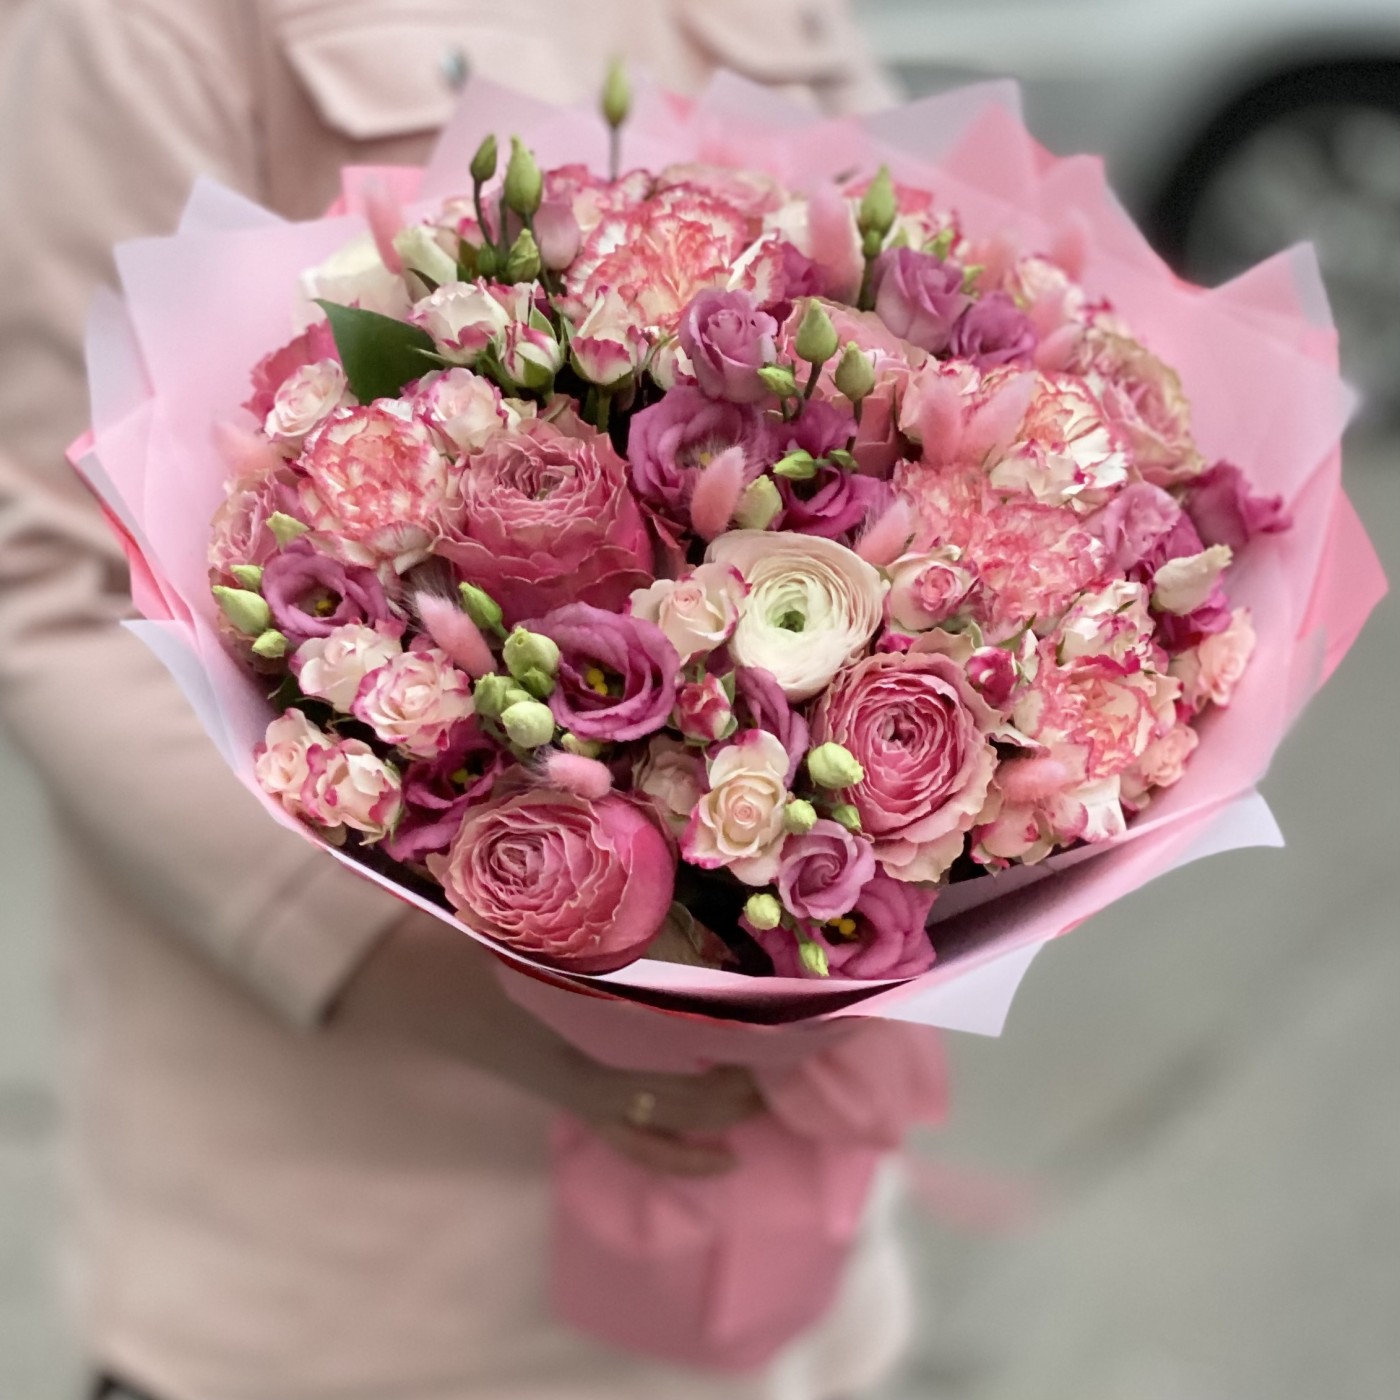 Роскошная корзина разноцветных роз до 10000 руб на День Восьмого Марта